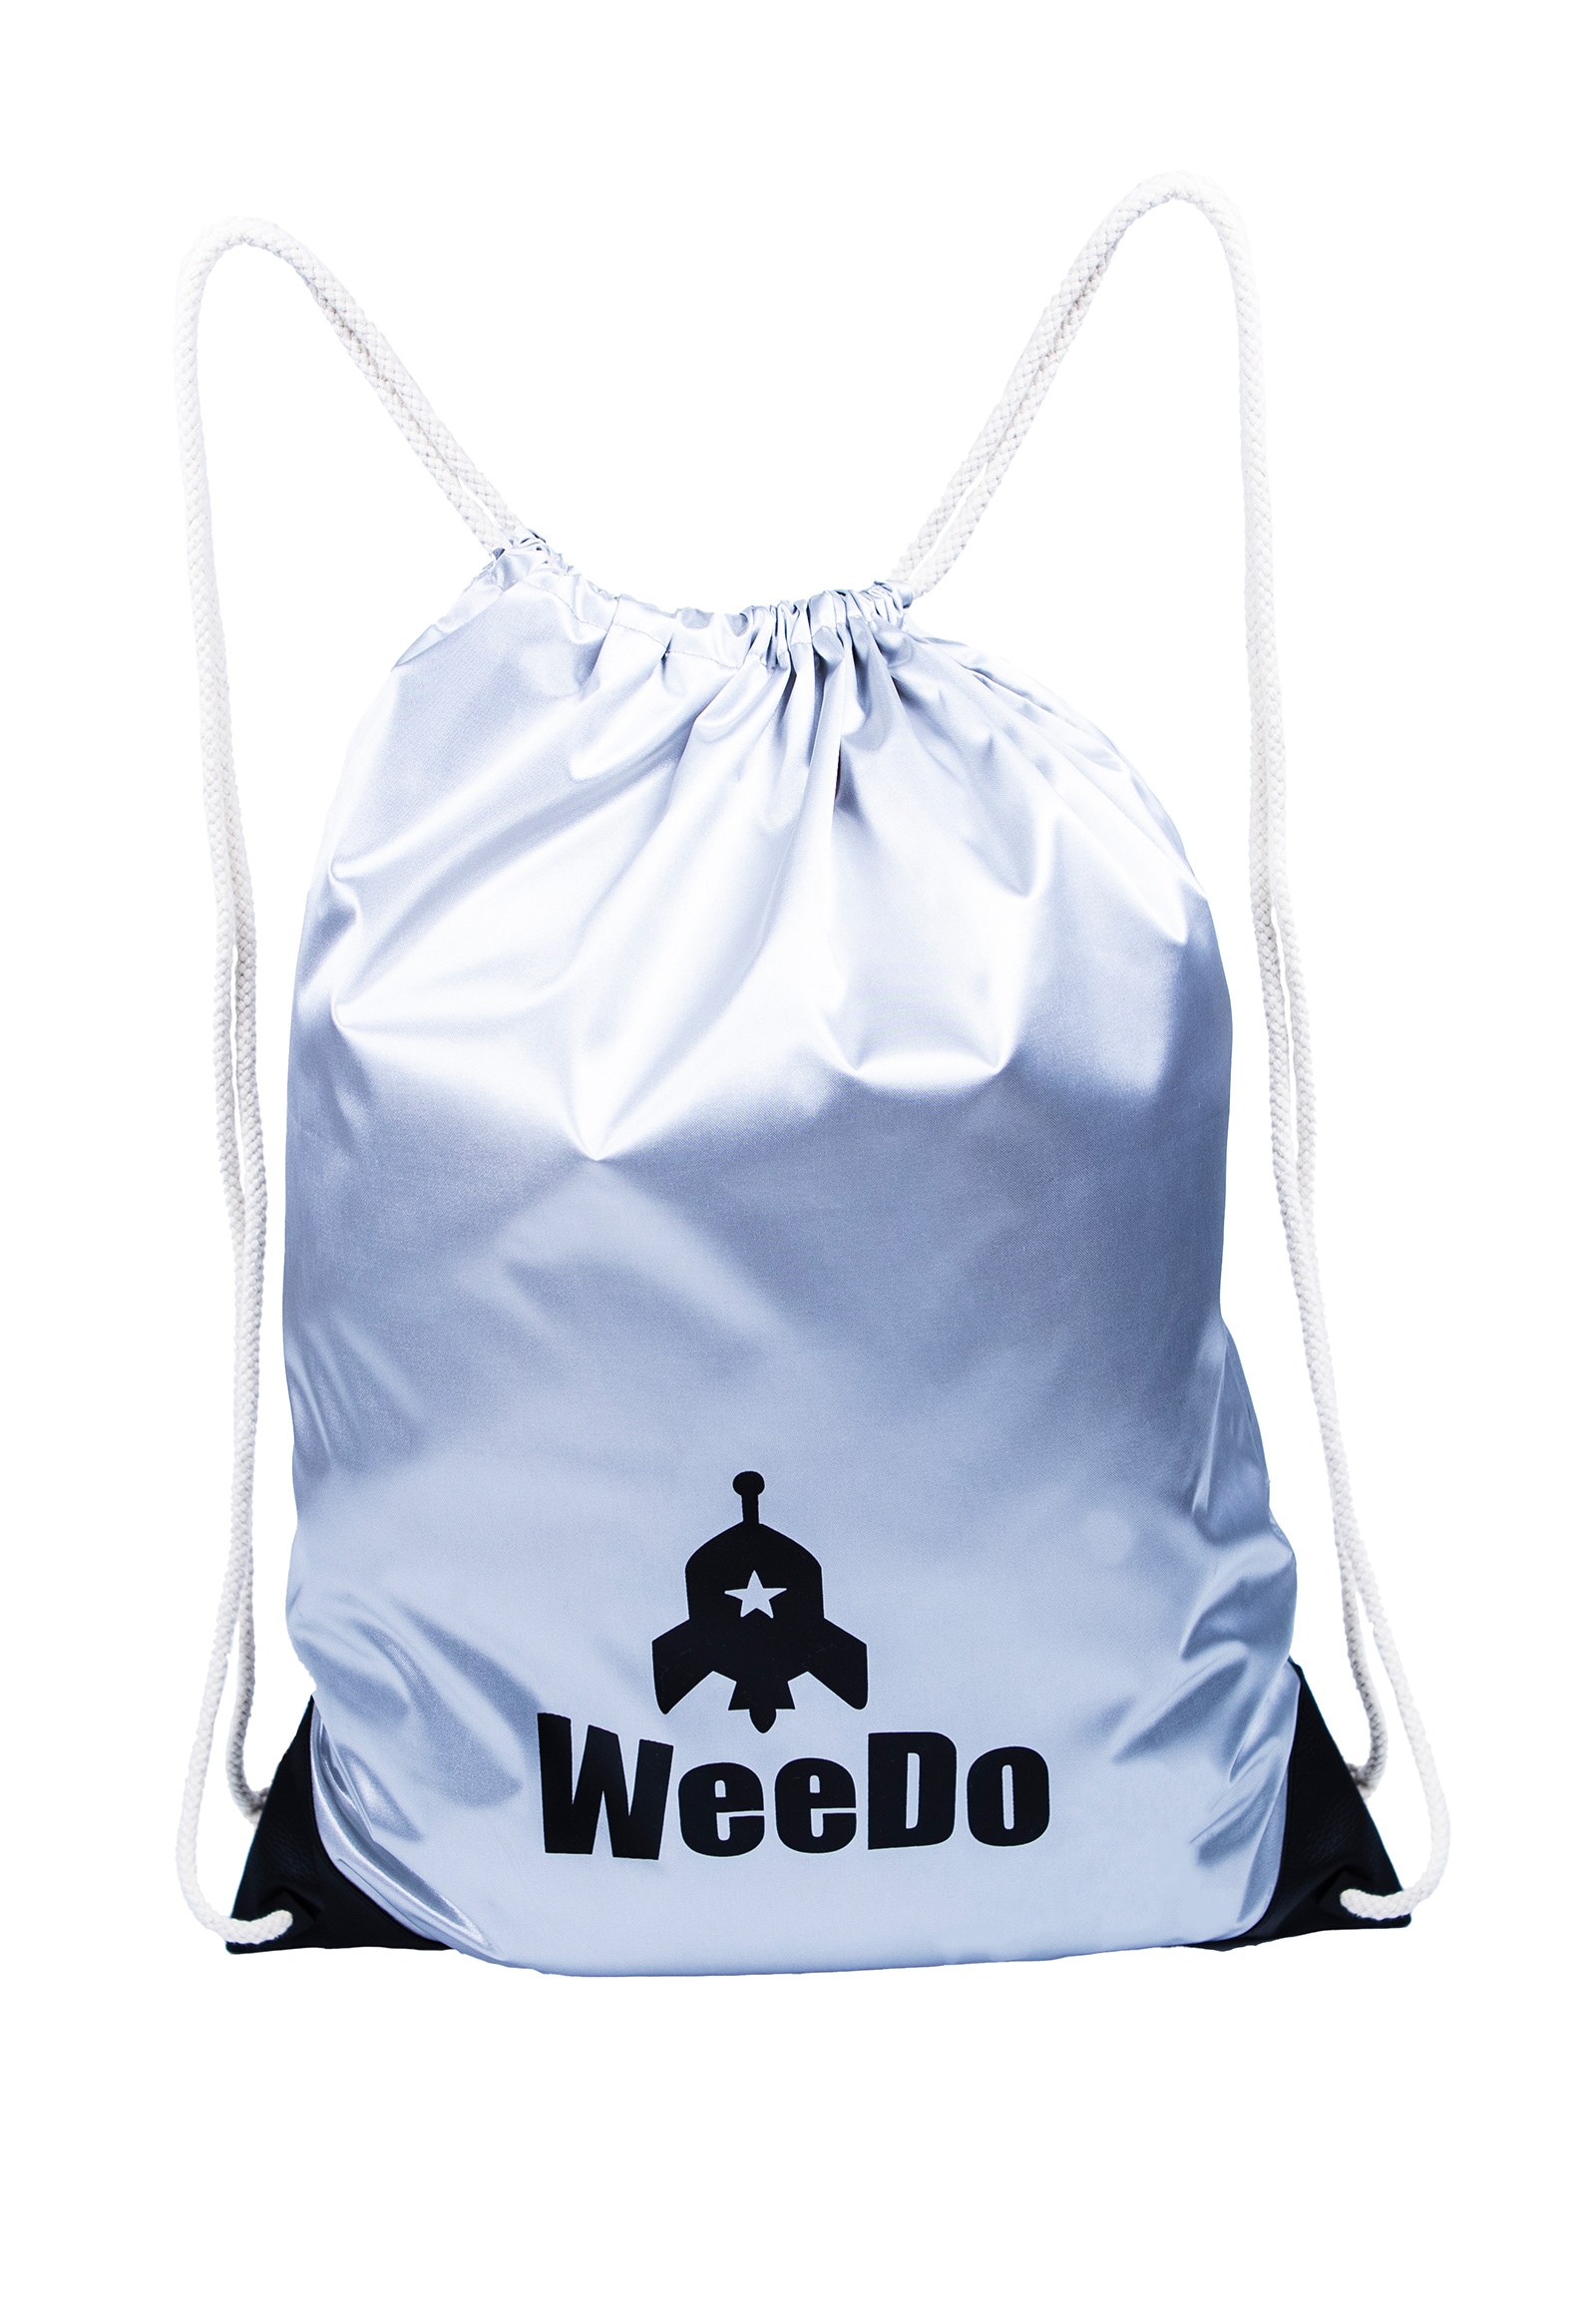 WeeDo Turnbeutel »Monsterbag POWDO Commander«, Verstärkung an den Ecken, nachhaltig produziert